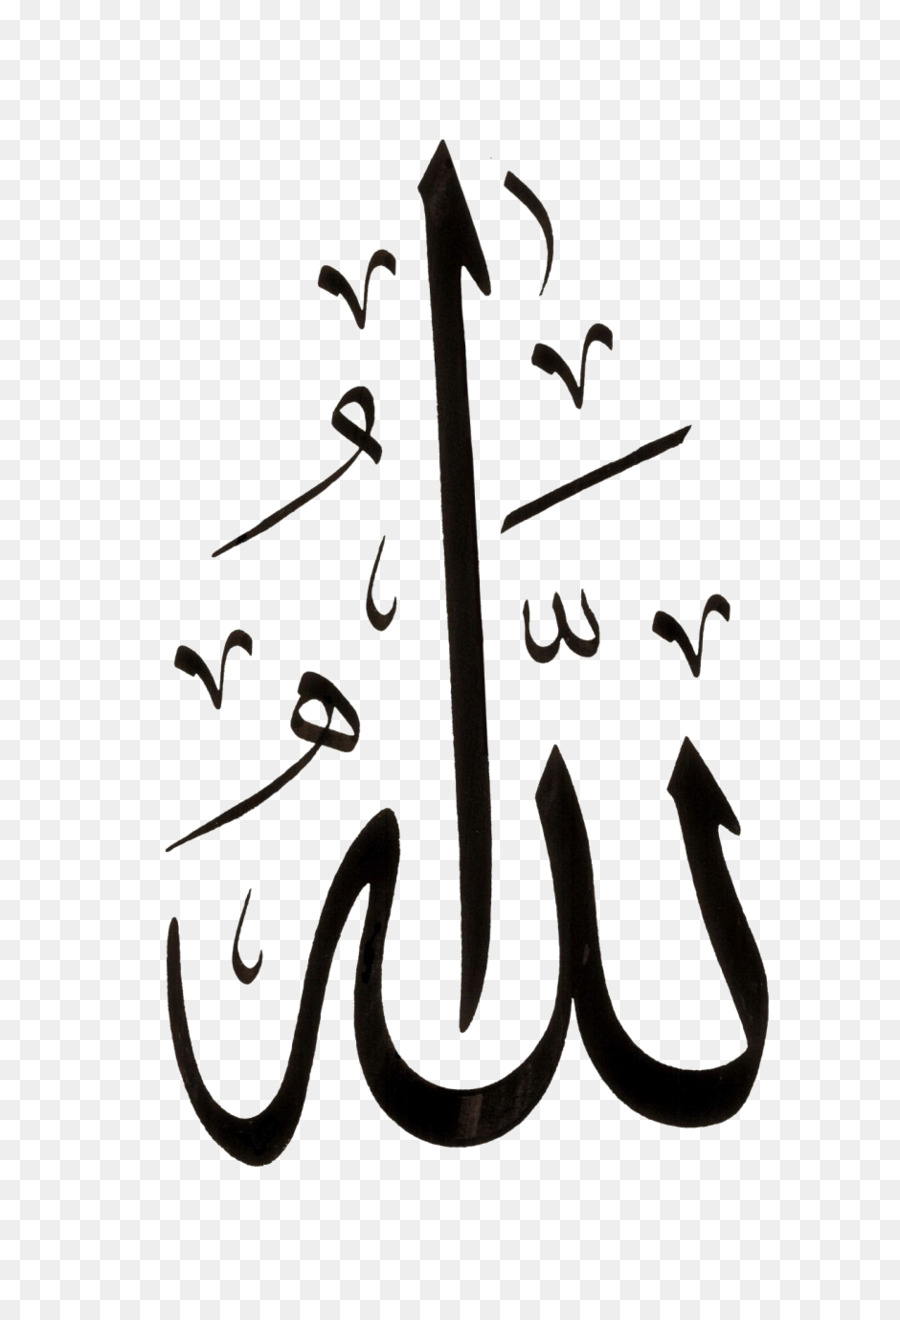  Allah  Lislam De La Calligraphie  Arabe PNG Allah  